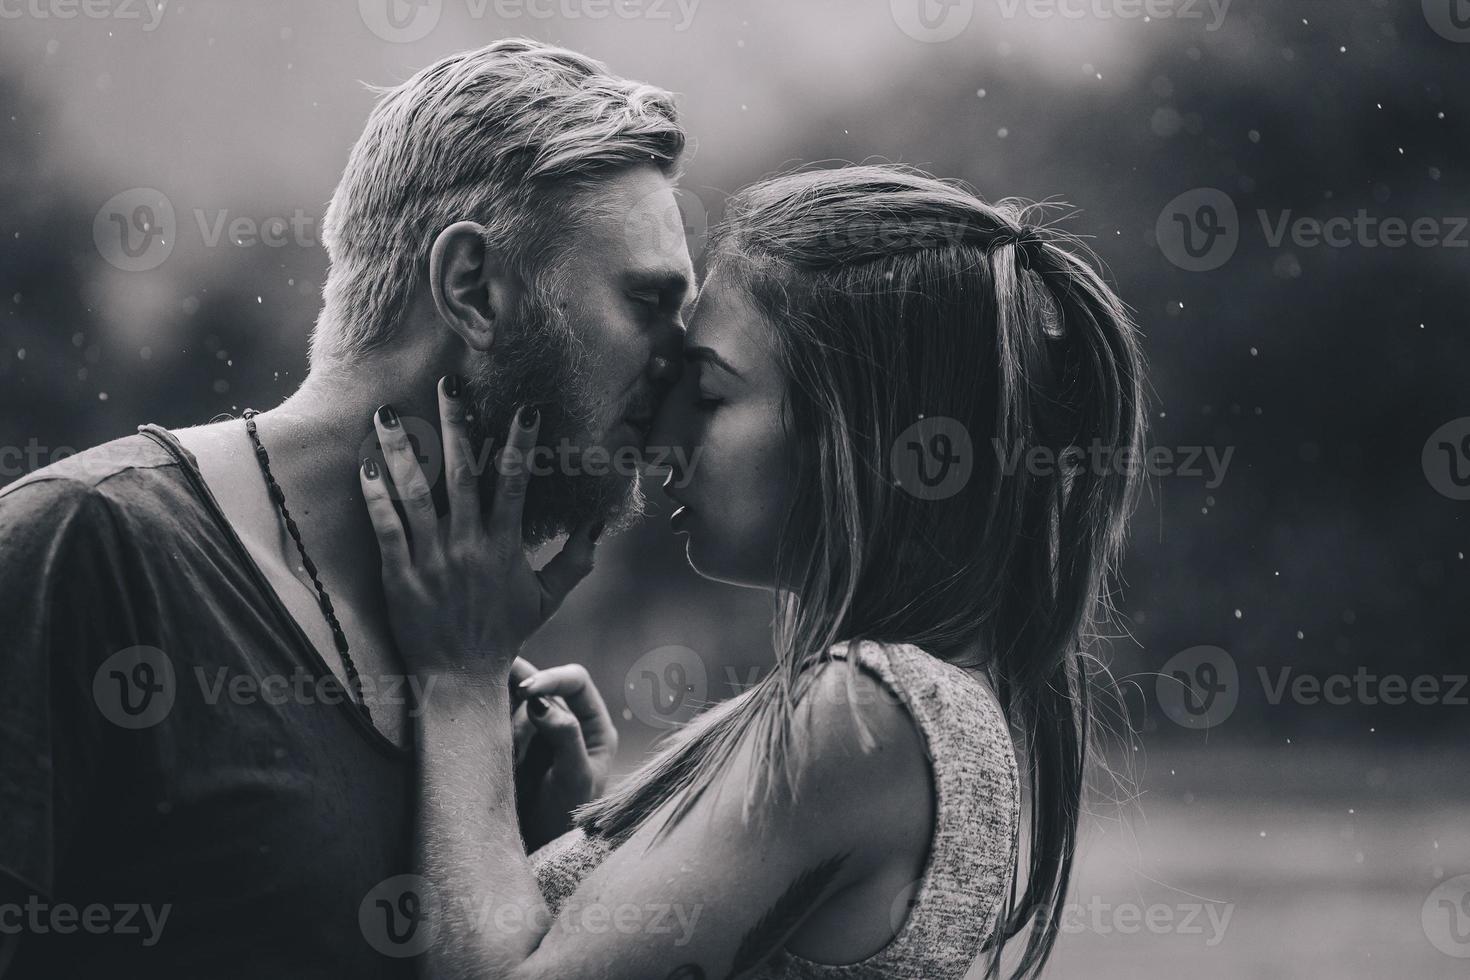 Schönes Paar, das sich im Regen küsst foto